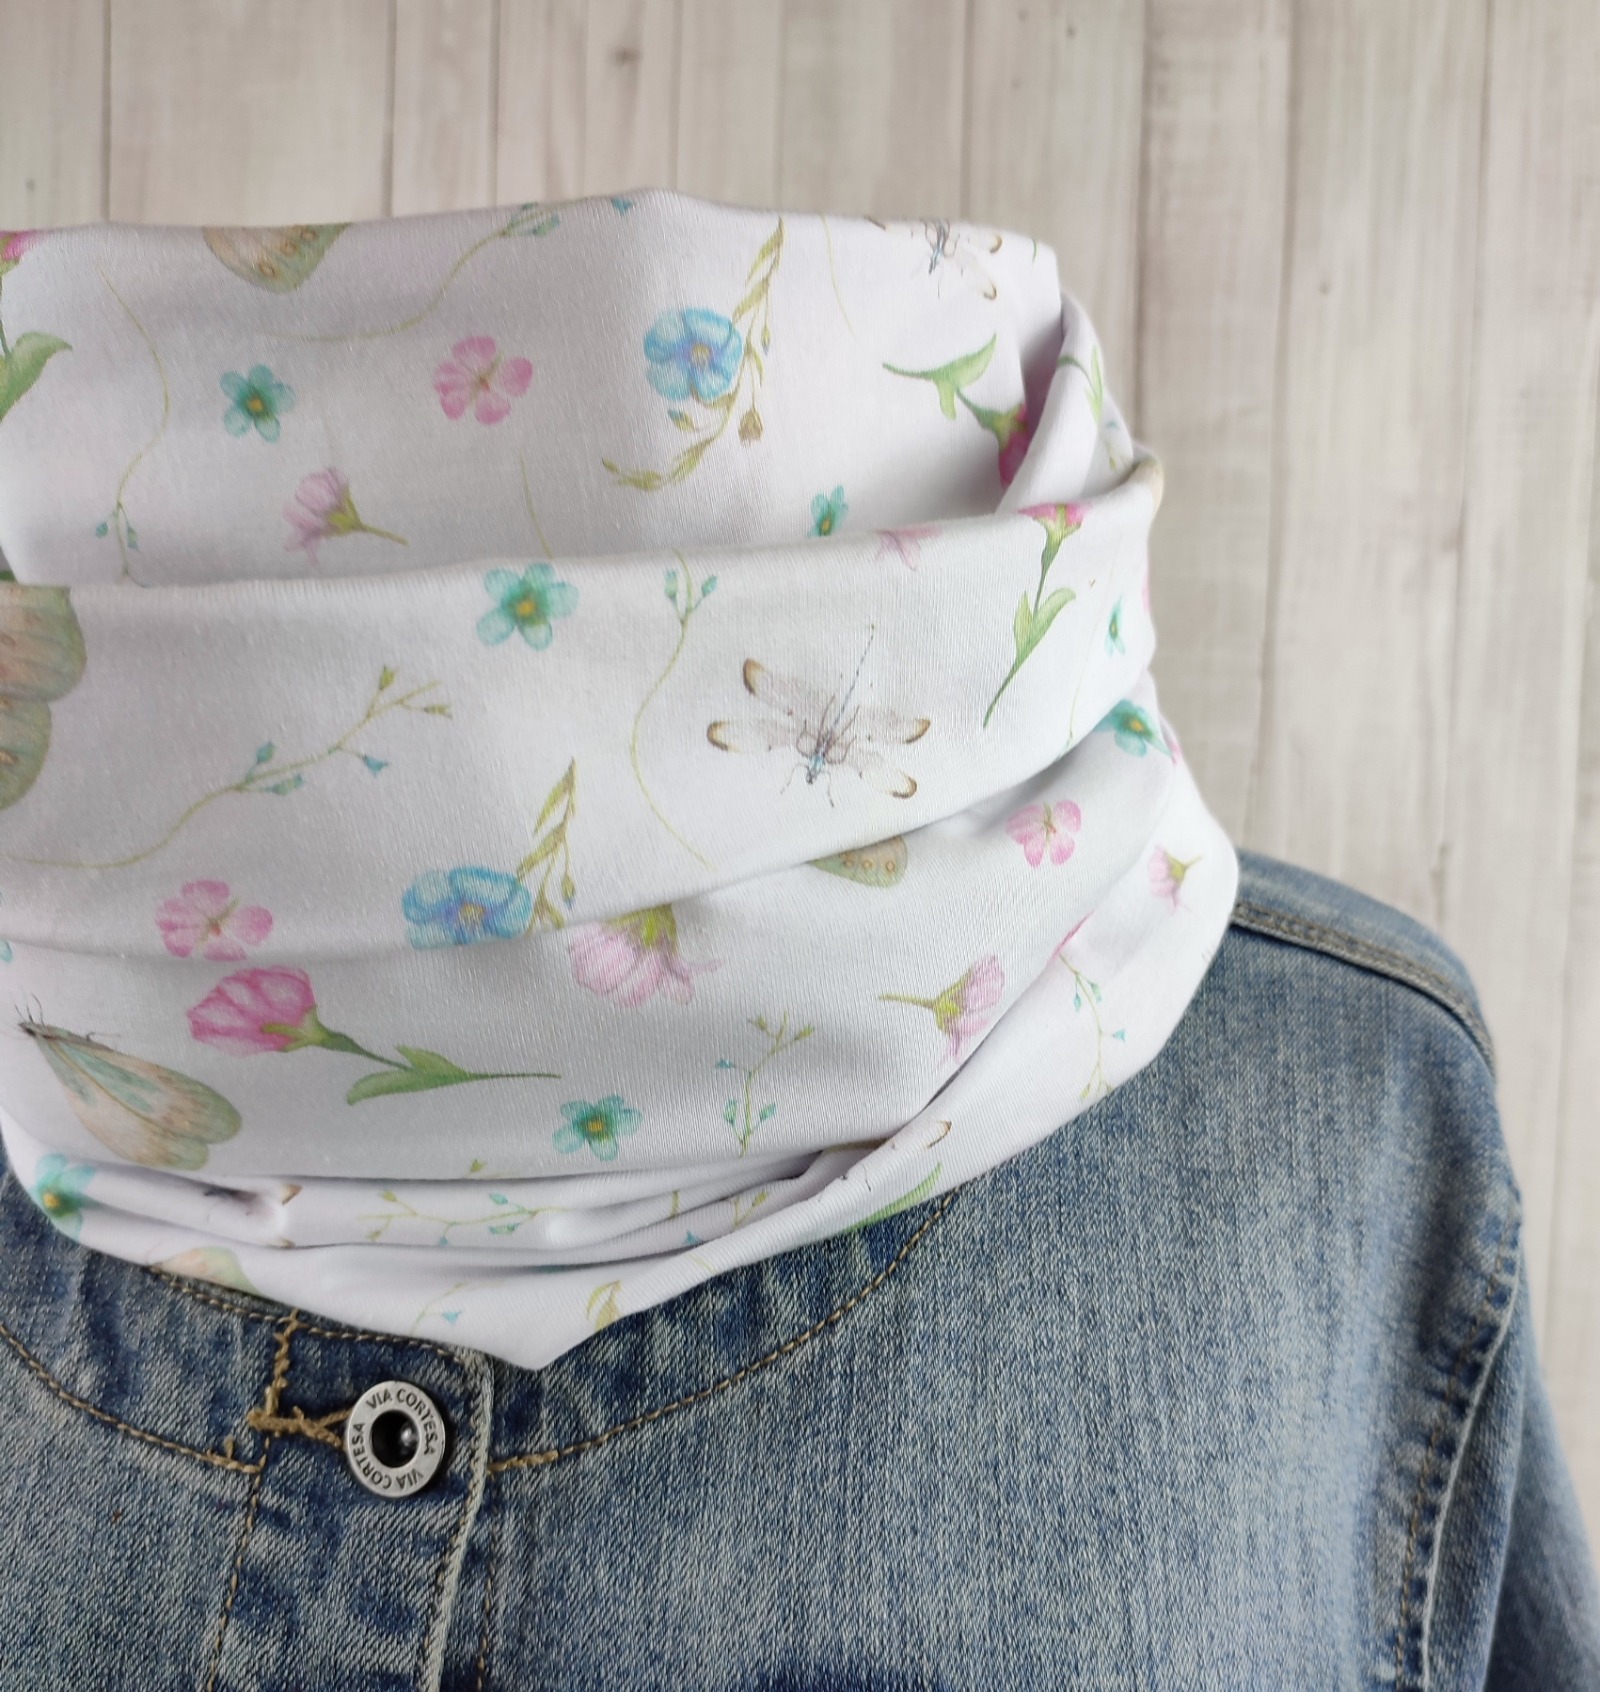 Loop Schlauchschal in weiß mit ganz zarten Blumen und Schmetterlingen in rosa und hellblau - Schal